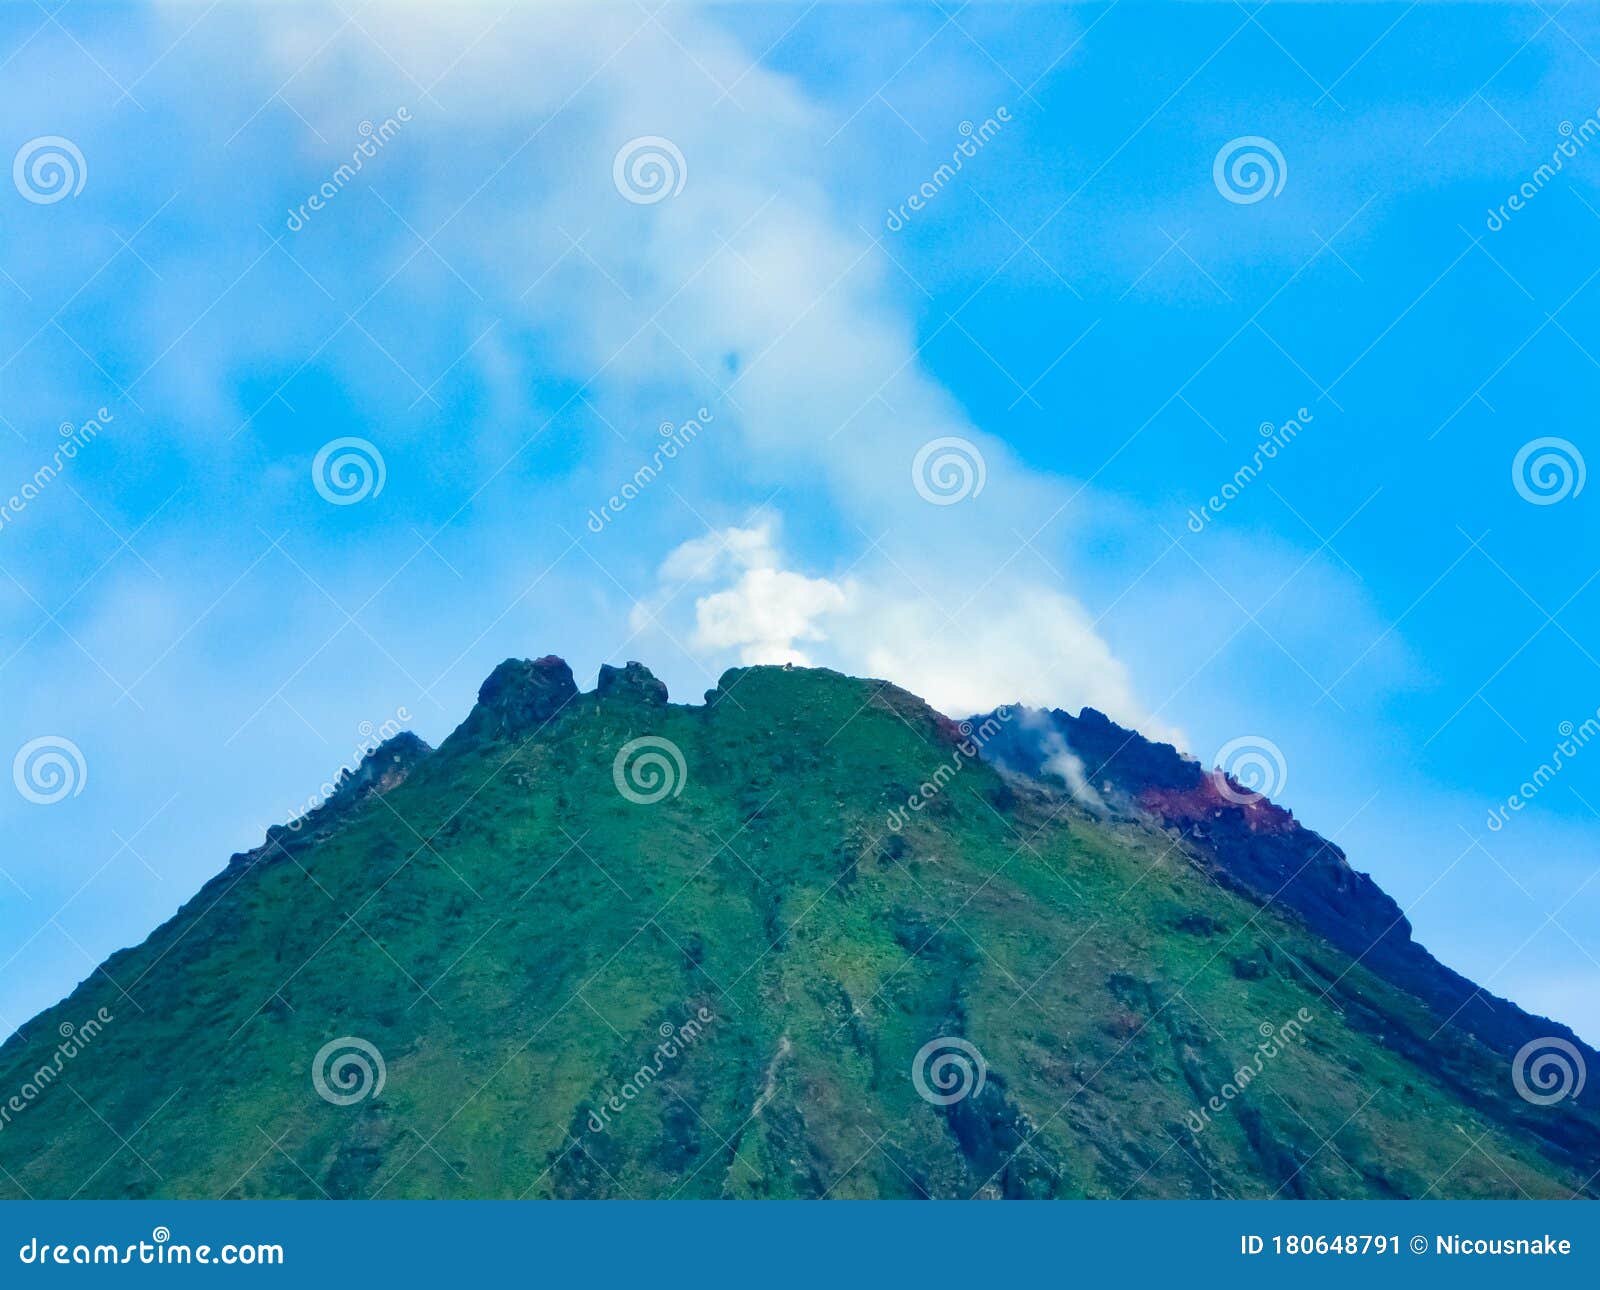 阿雷纳尔火山国家公园 库存图片. 图片 包括有 哥斯达黎加, 火箭筒, 野生生物, 火山, 游人, 亚马逊 - 71316497